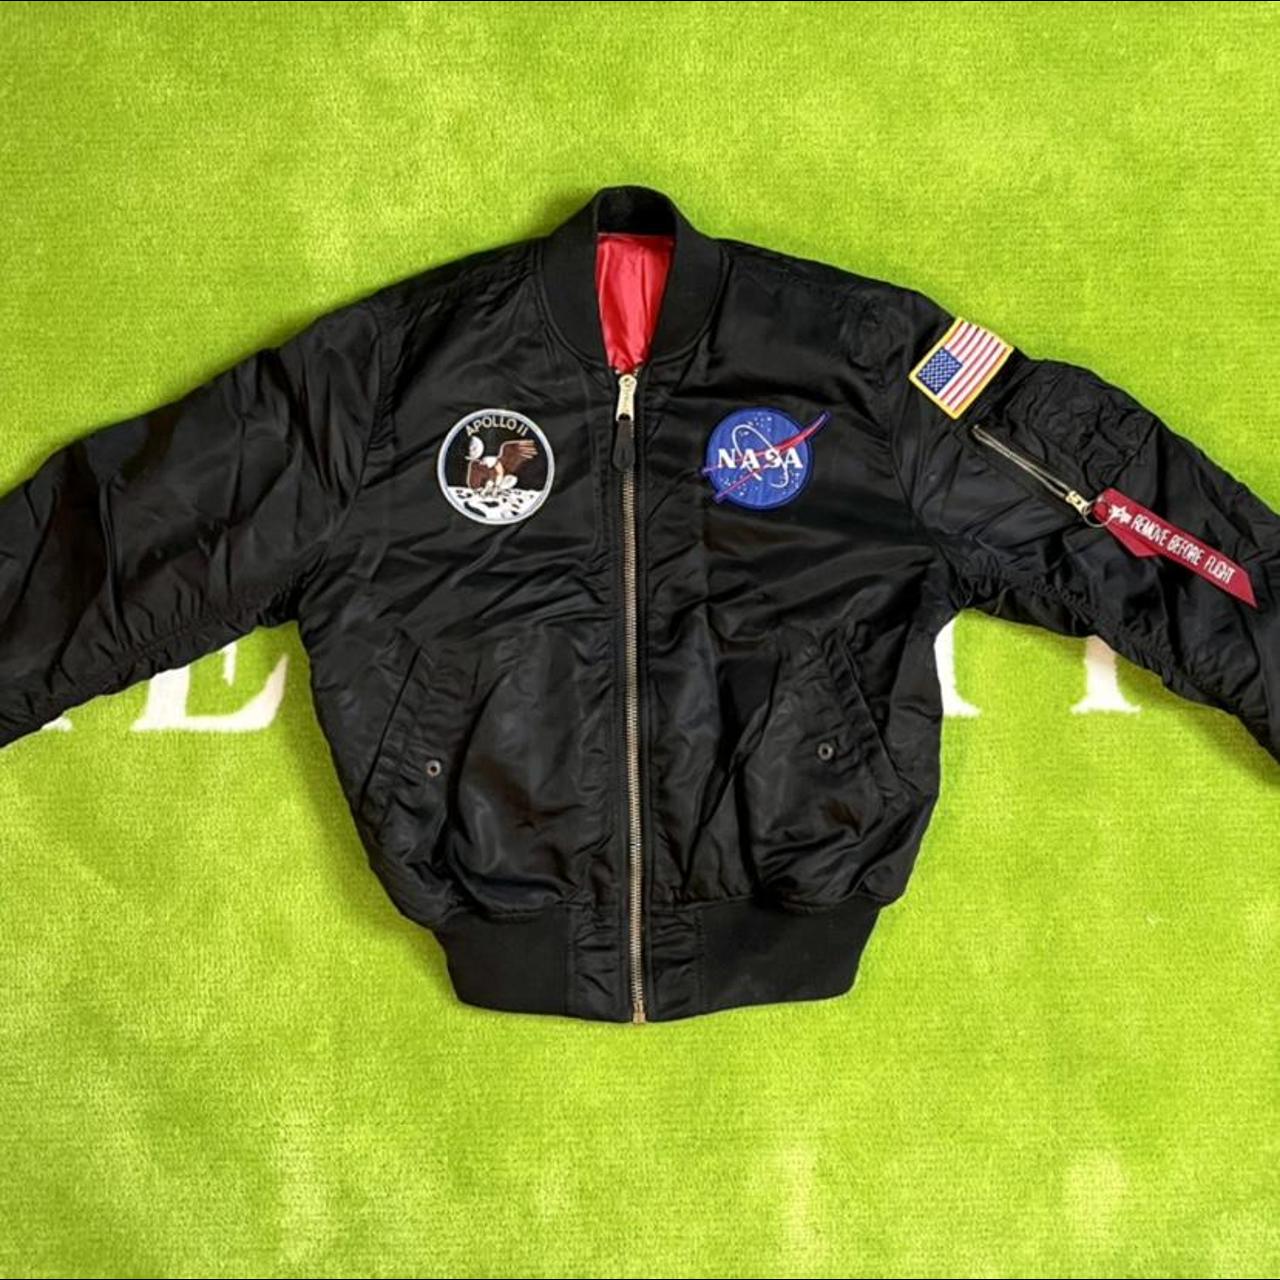 NASA Flight jacket #Nasa #FlightJacket #USA - Depop